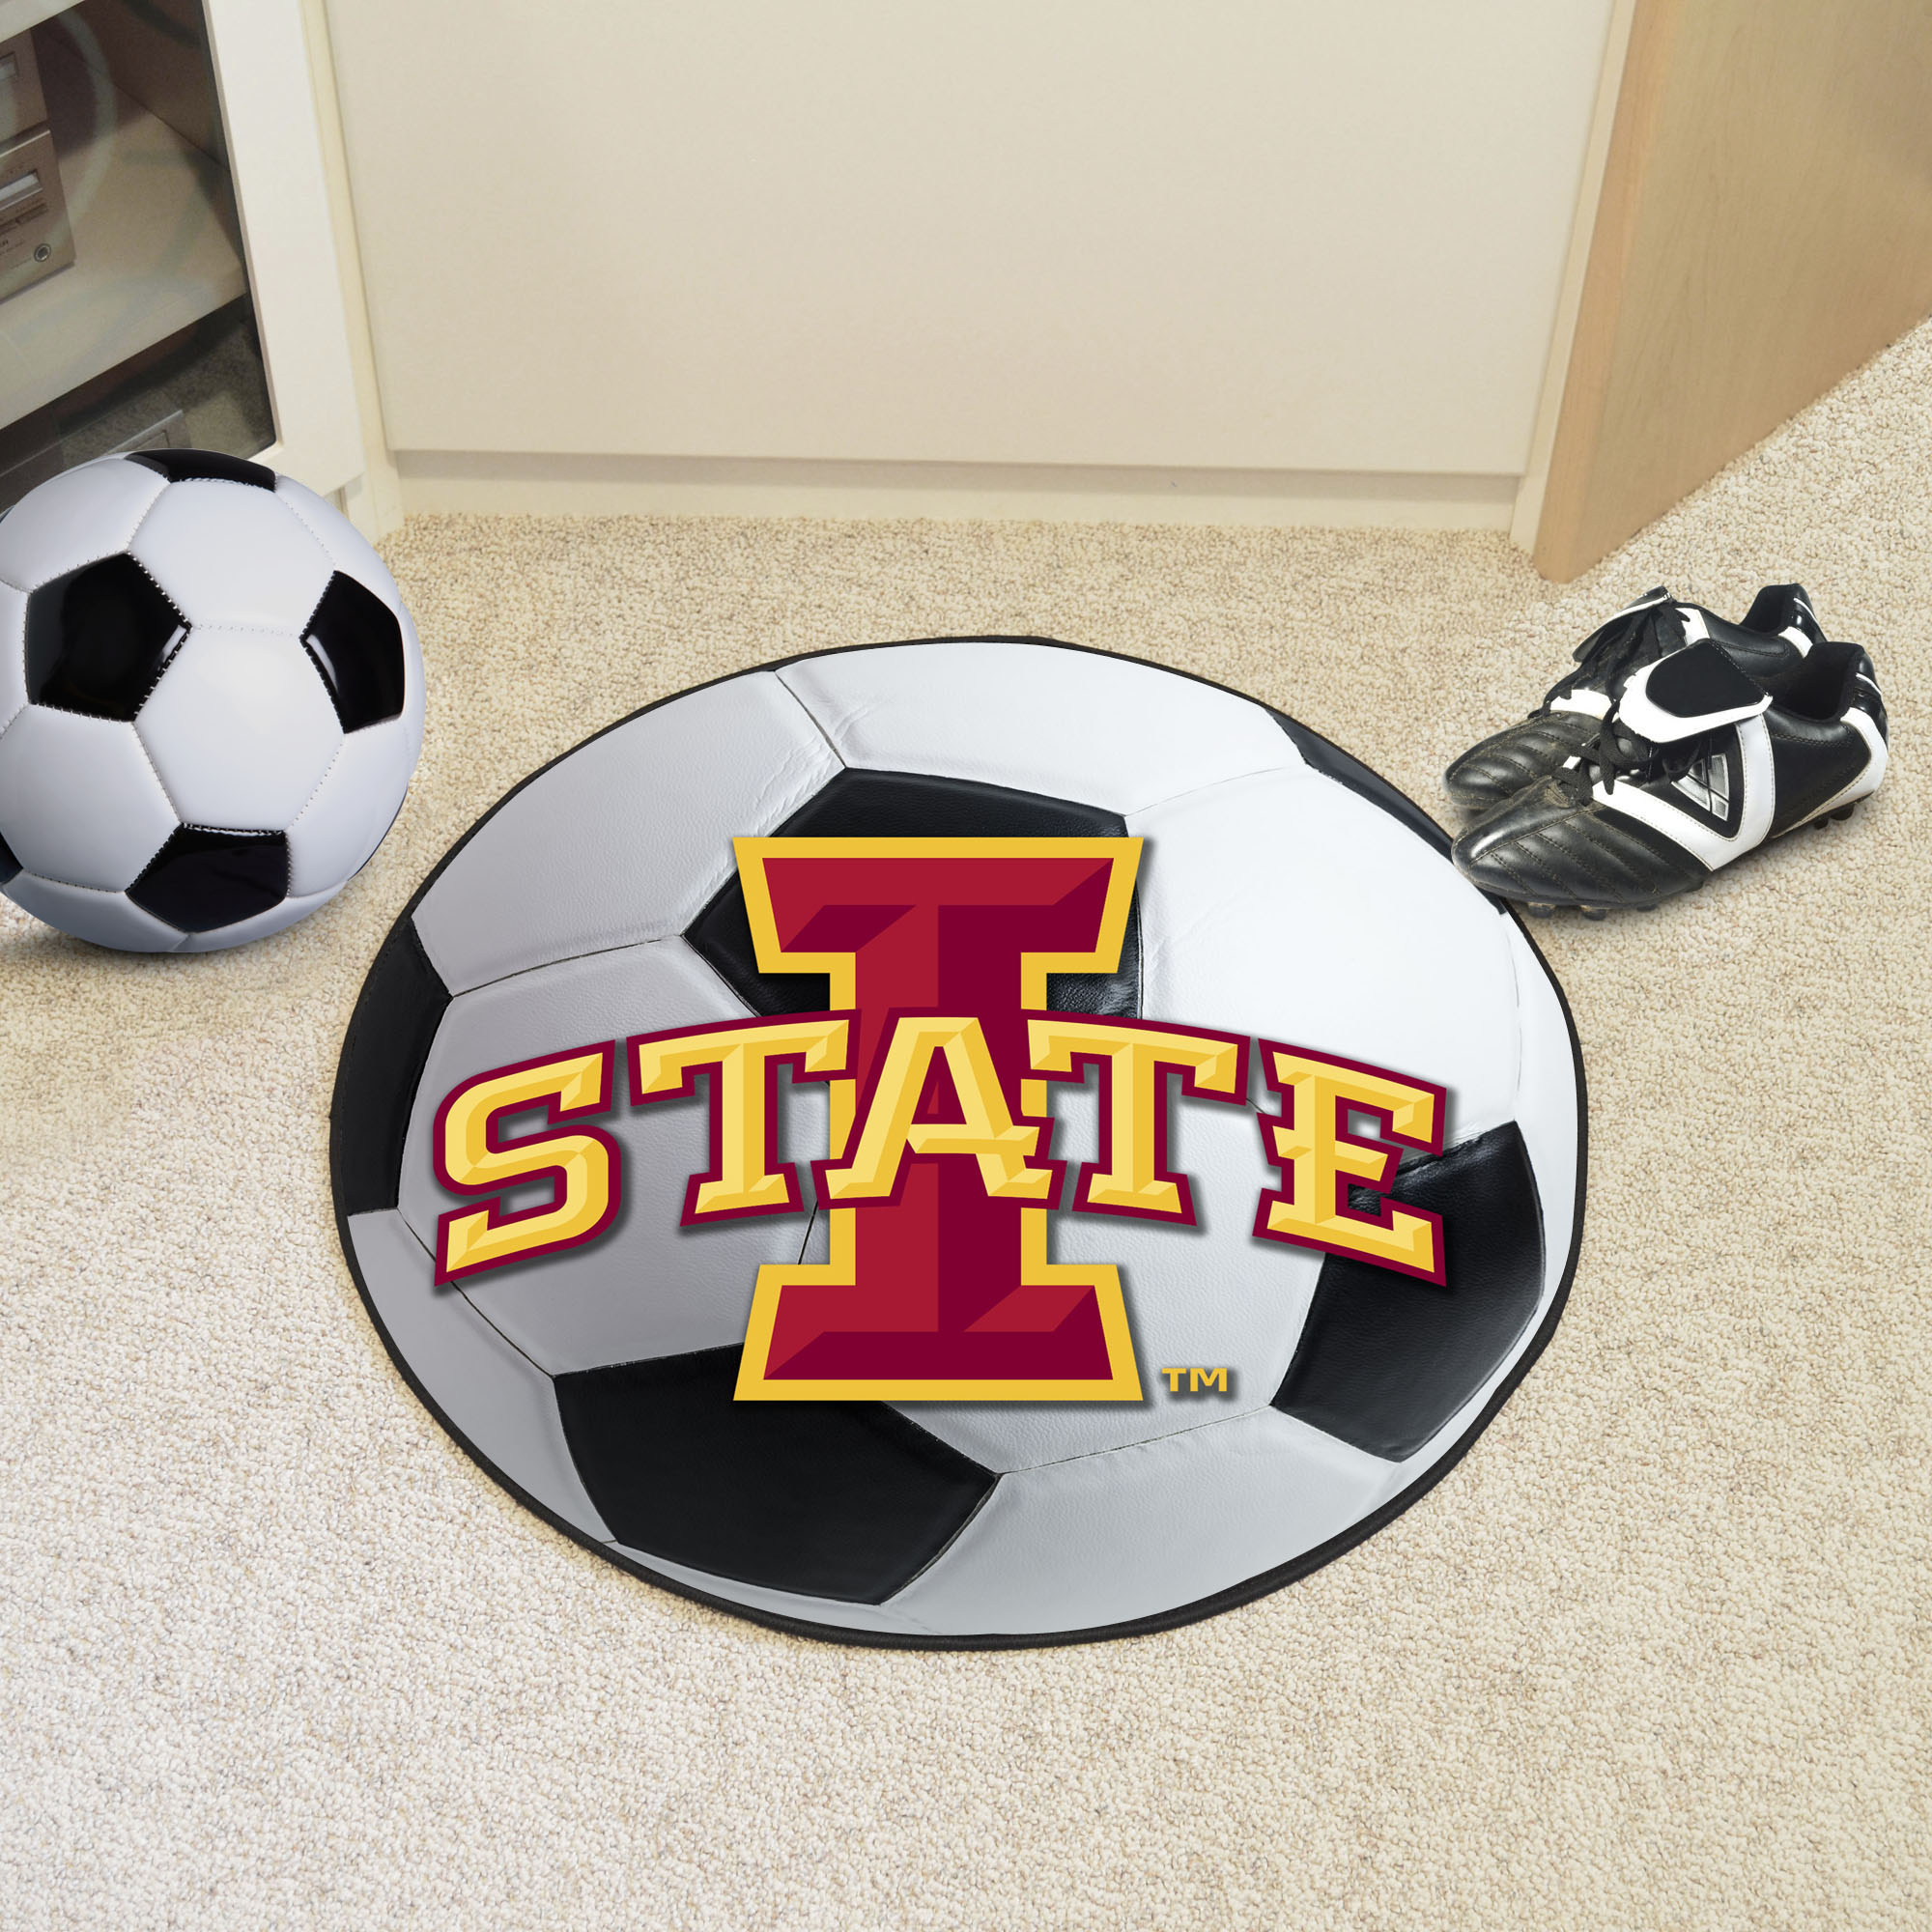 Iowa State University Ball-Shaped Area Rugs (Ball Shaped Area Rugs: Soccer Ball)